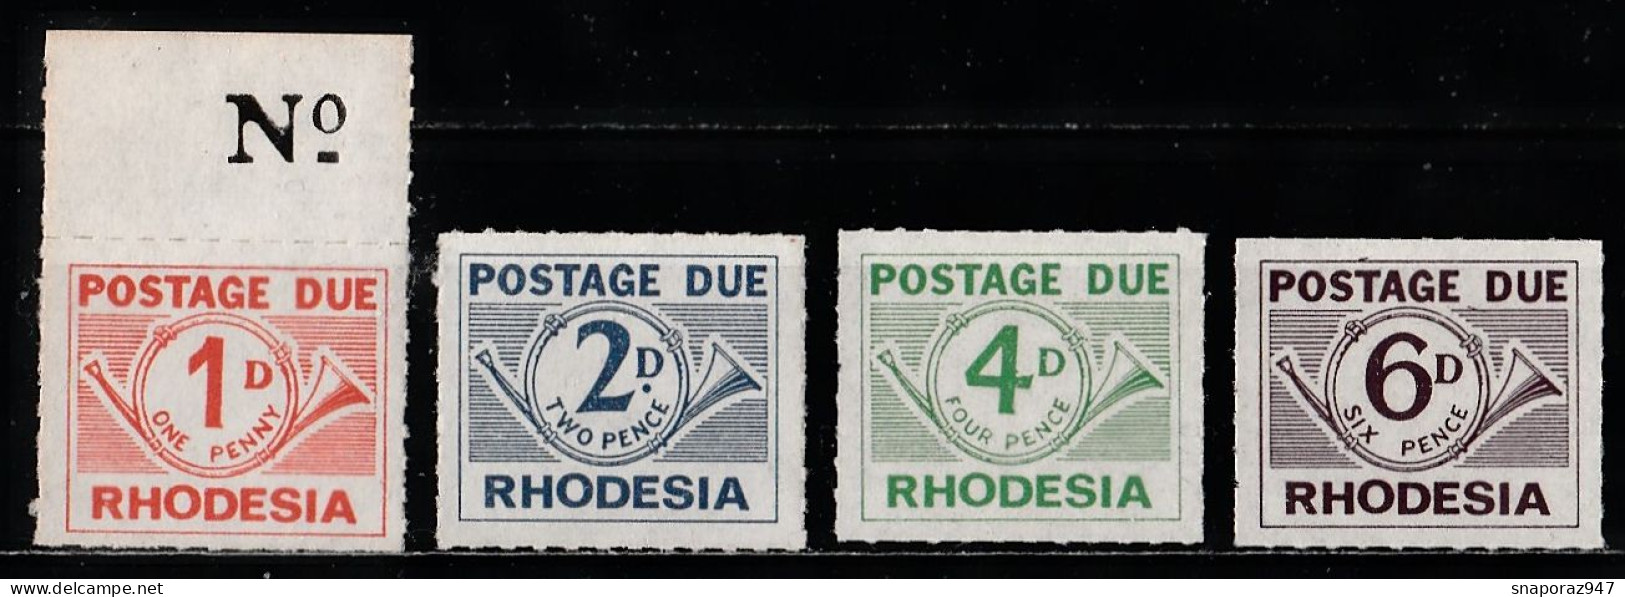 1965 Rhodesia Timbre Taxe Set MNH** Ta7 - Rodesia (1964-1980)